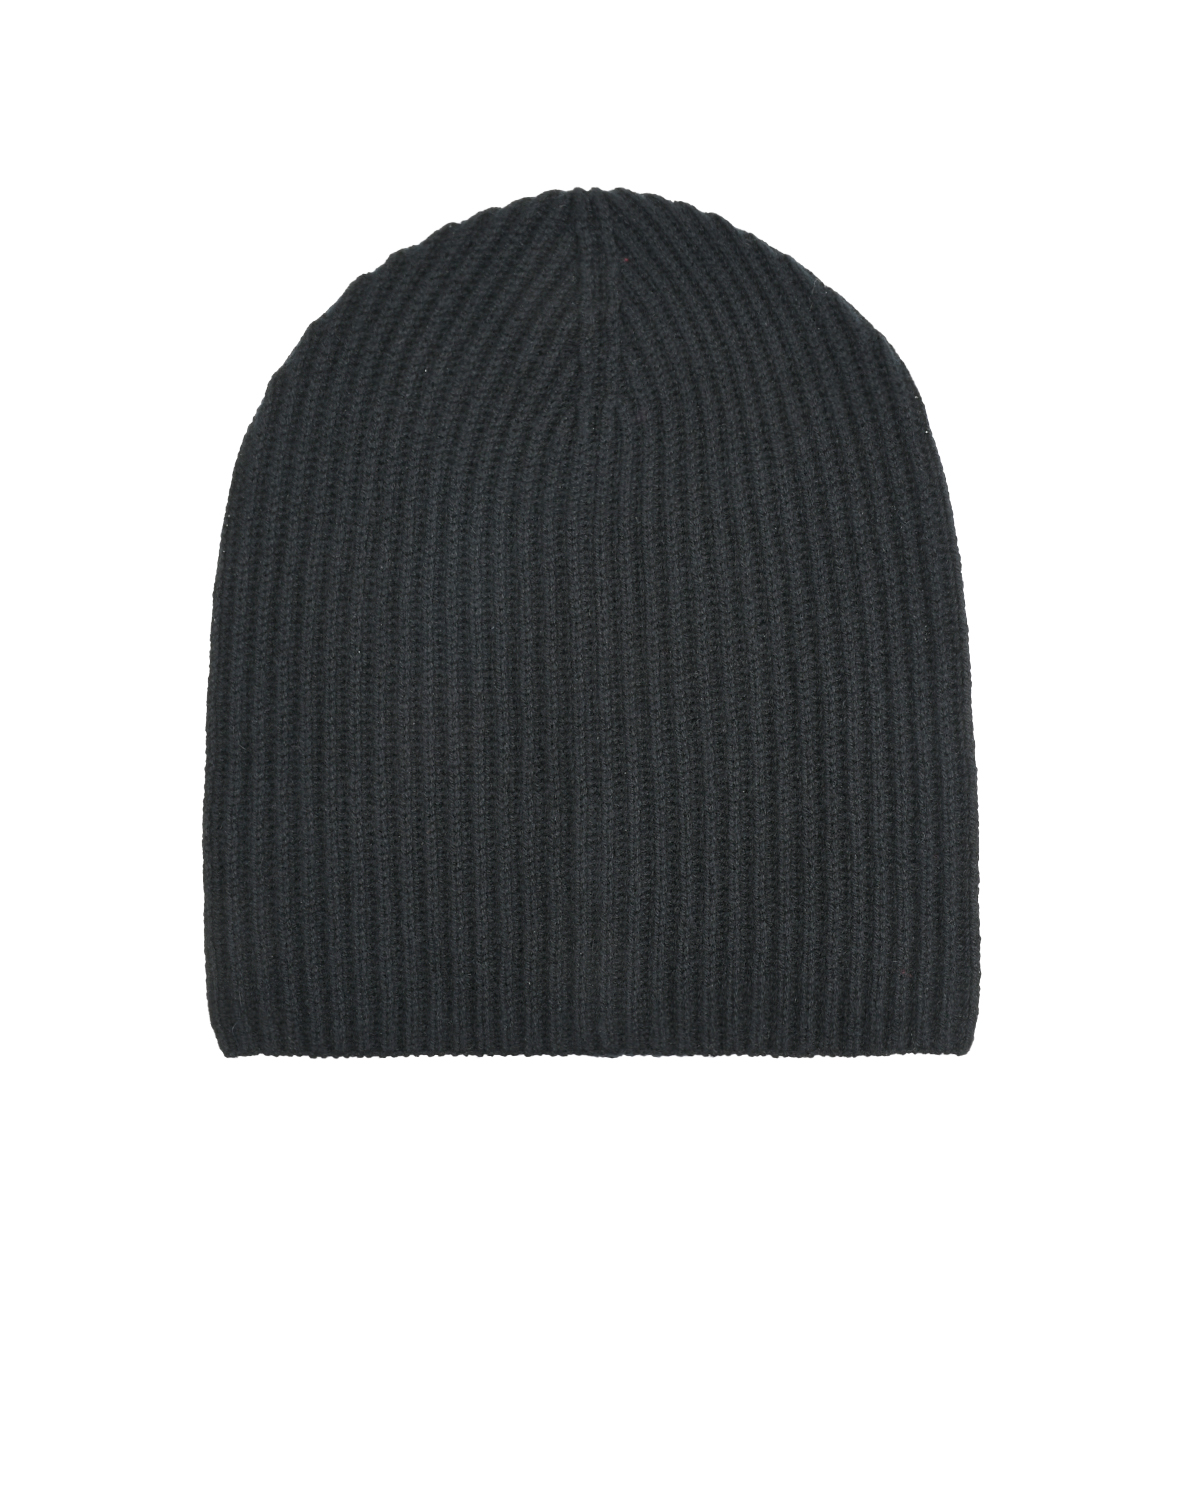 Черная шапка из кашемира с отделкой в рубчик Allude, размер unica, цвет черный